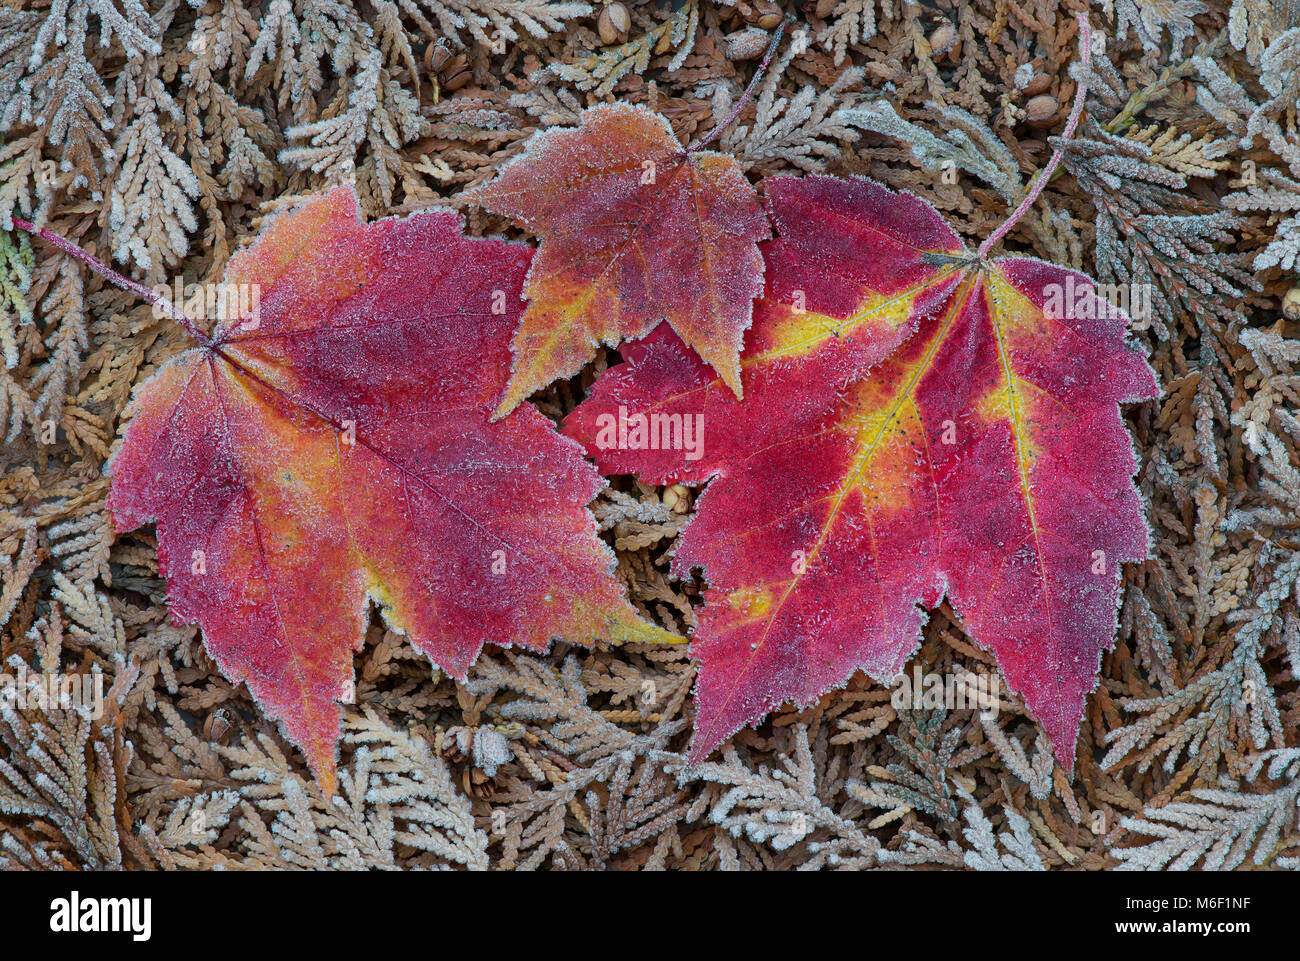 La brina sulle foglie di acero, da saltare Moody/Dembinsky Foto Assoc Foto Stock